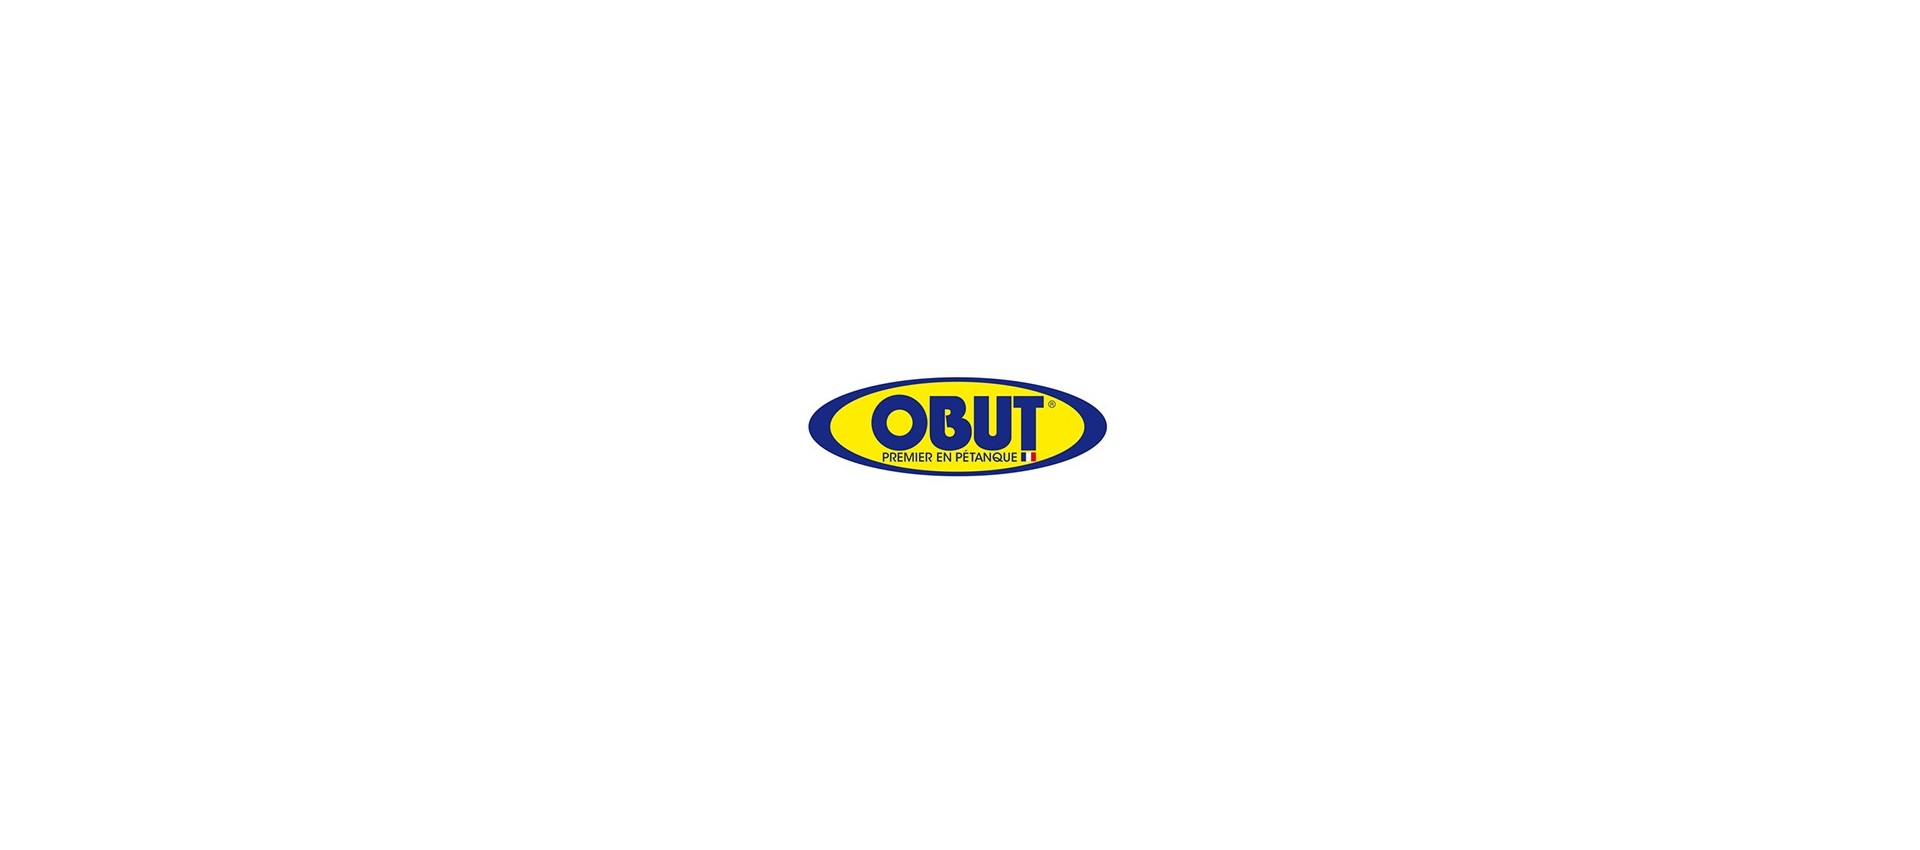 Venta Boules Obut en línea a precios inmejorables, entrega rápida